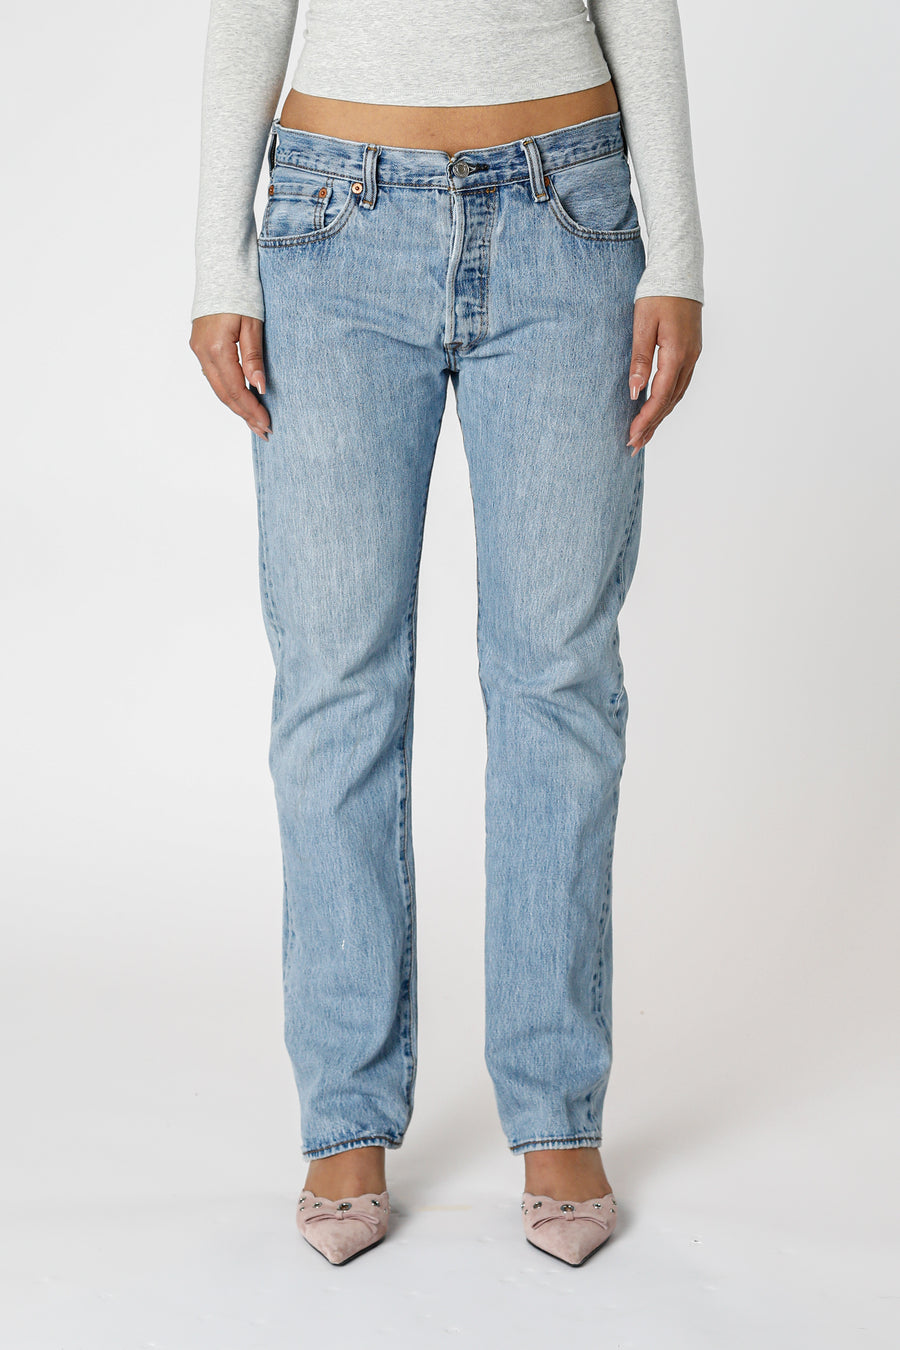 Vintage Levi's Denim Pants - W33 L34